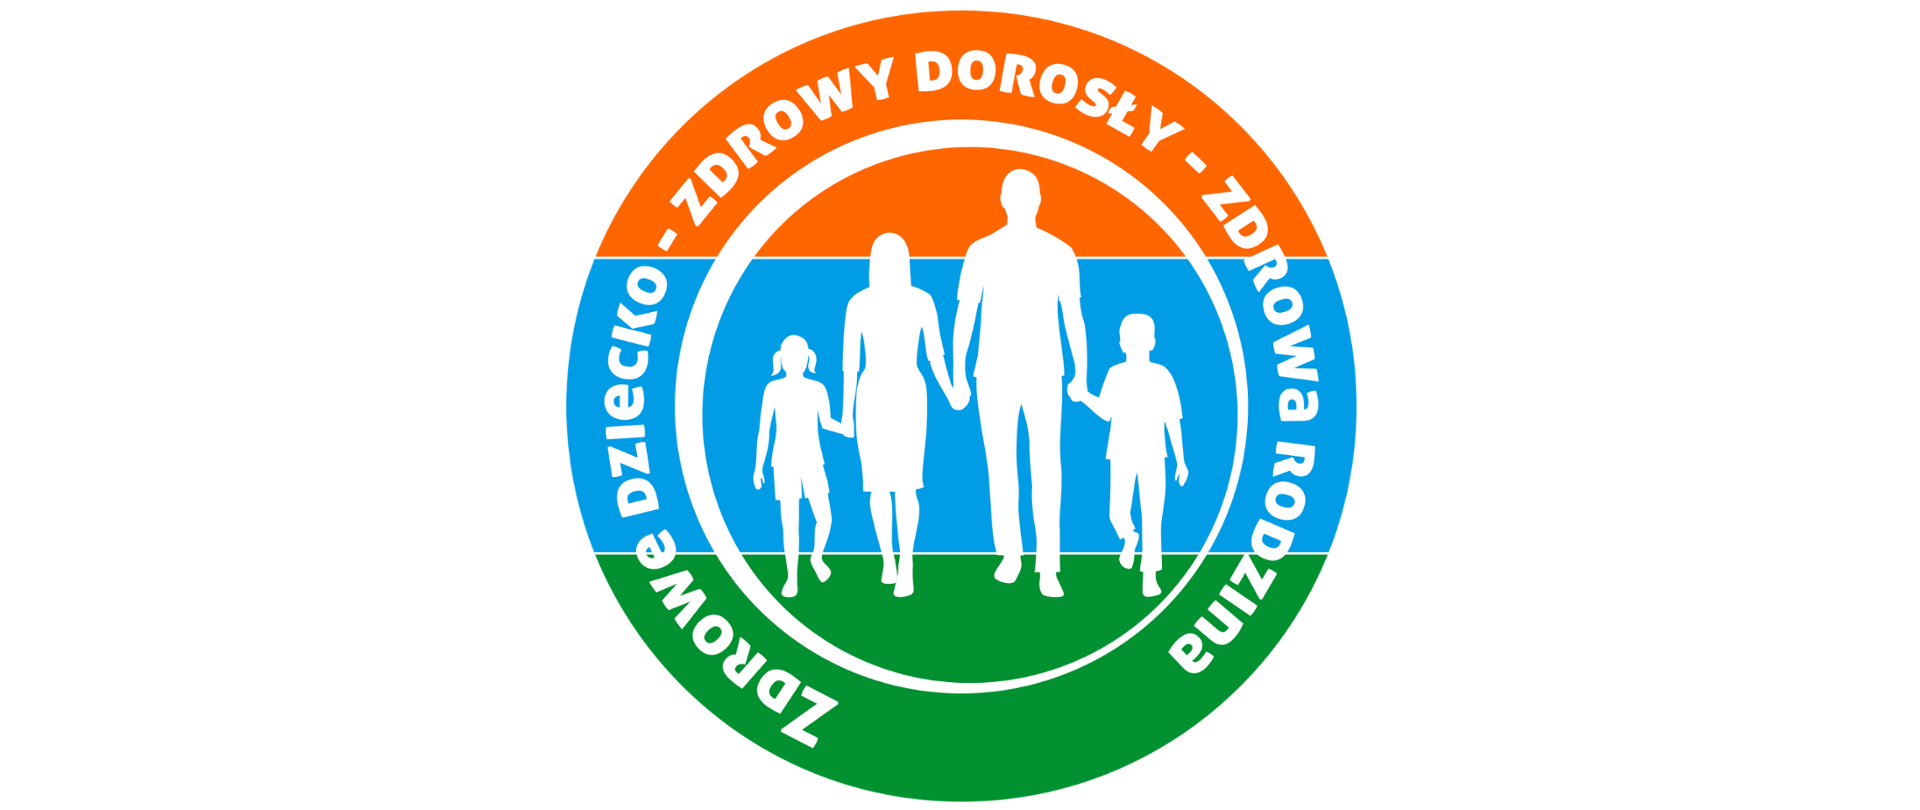 Trójkolorowe logo (kolor pomarańczowy na górze, w środku niebieski, na dole zielony) Projektu przedstawia rodzinę - dwie dorosłe osoby i dwójka dzieci trzymające się za ręce